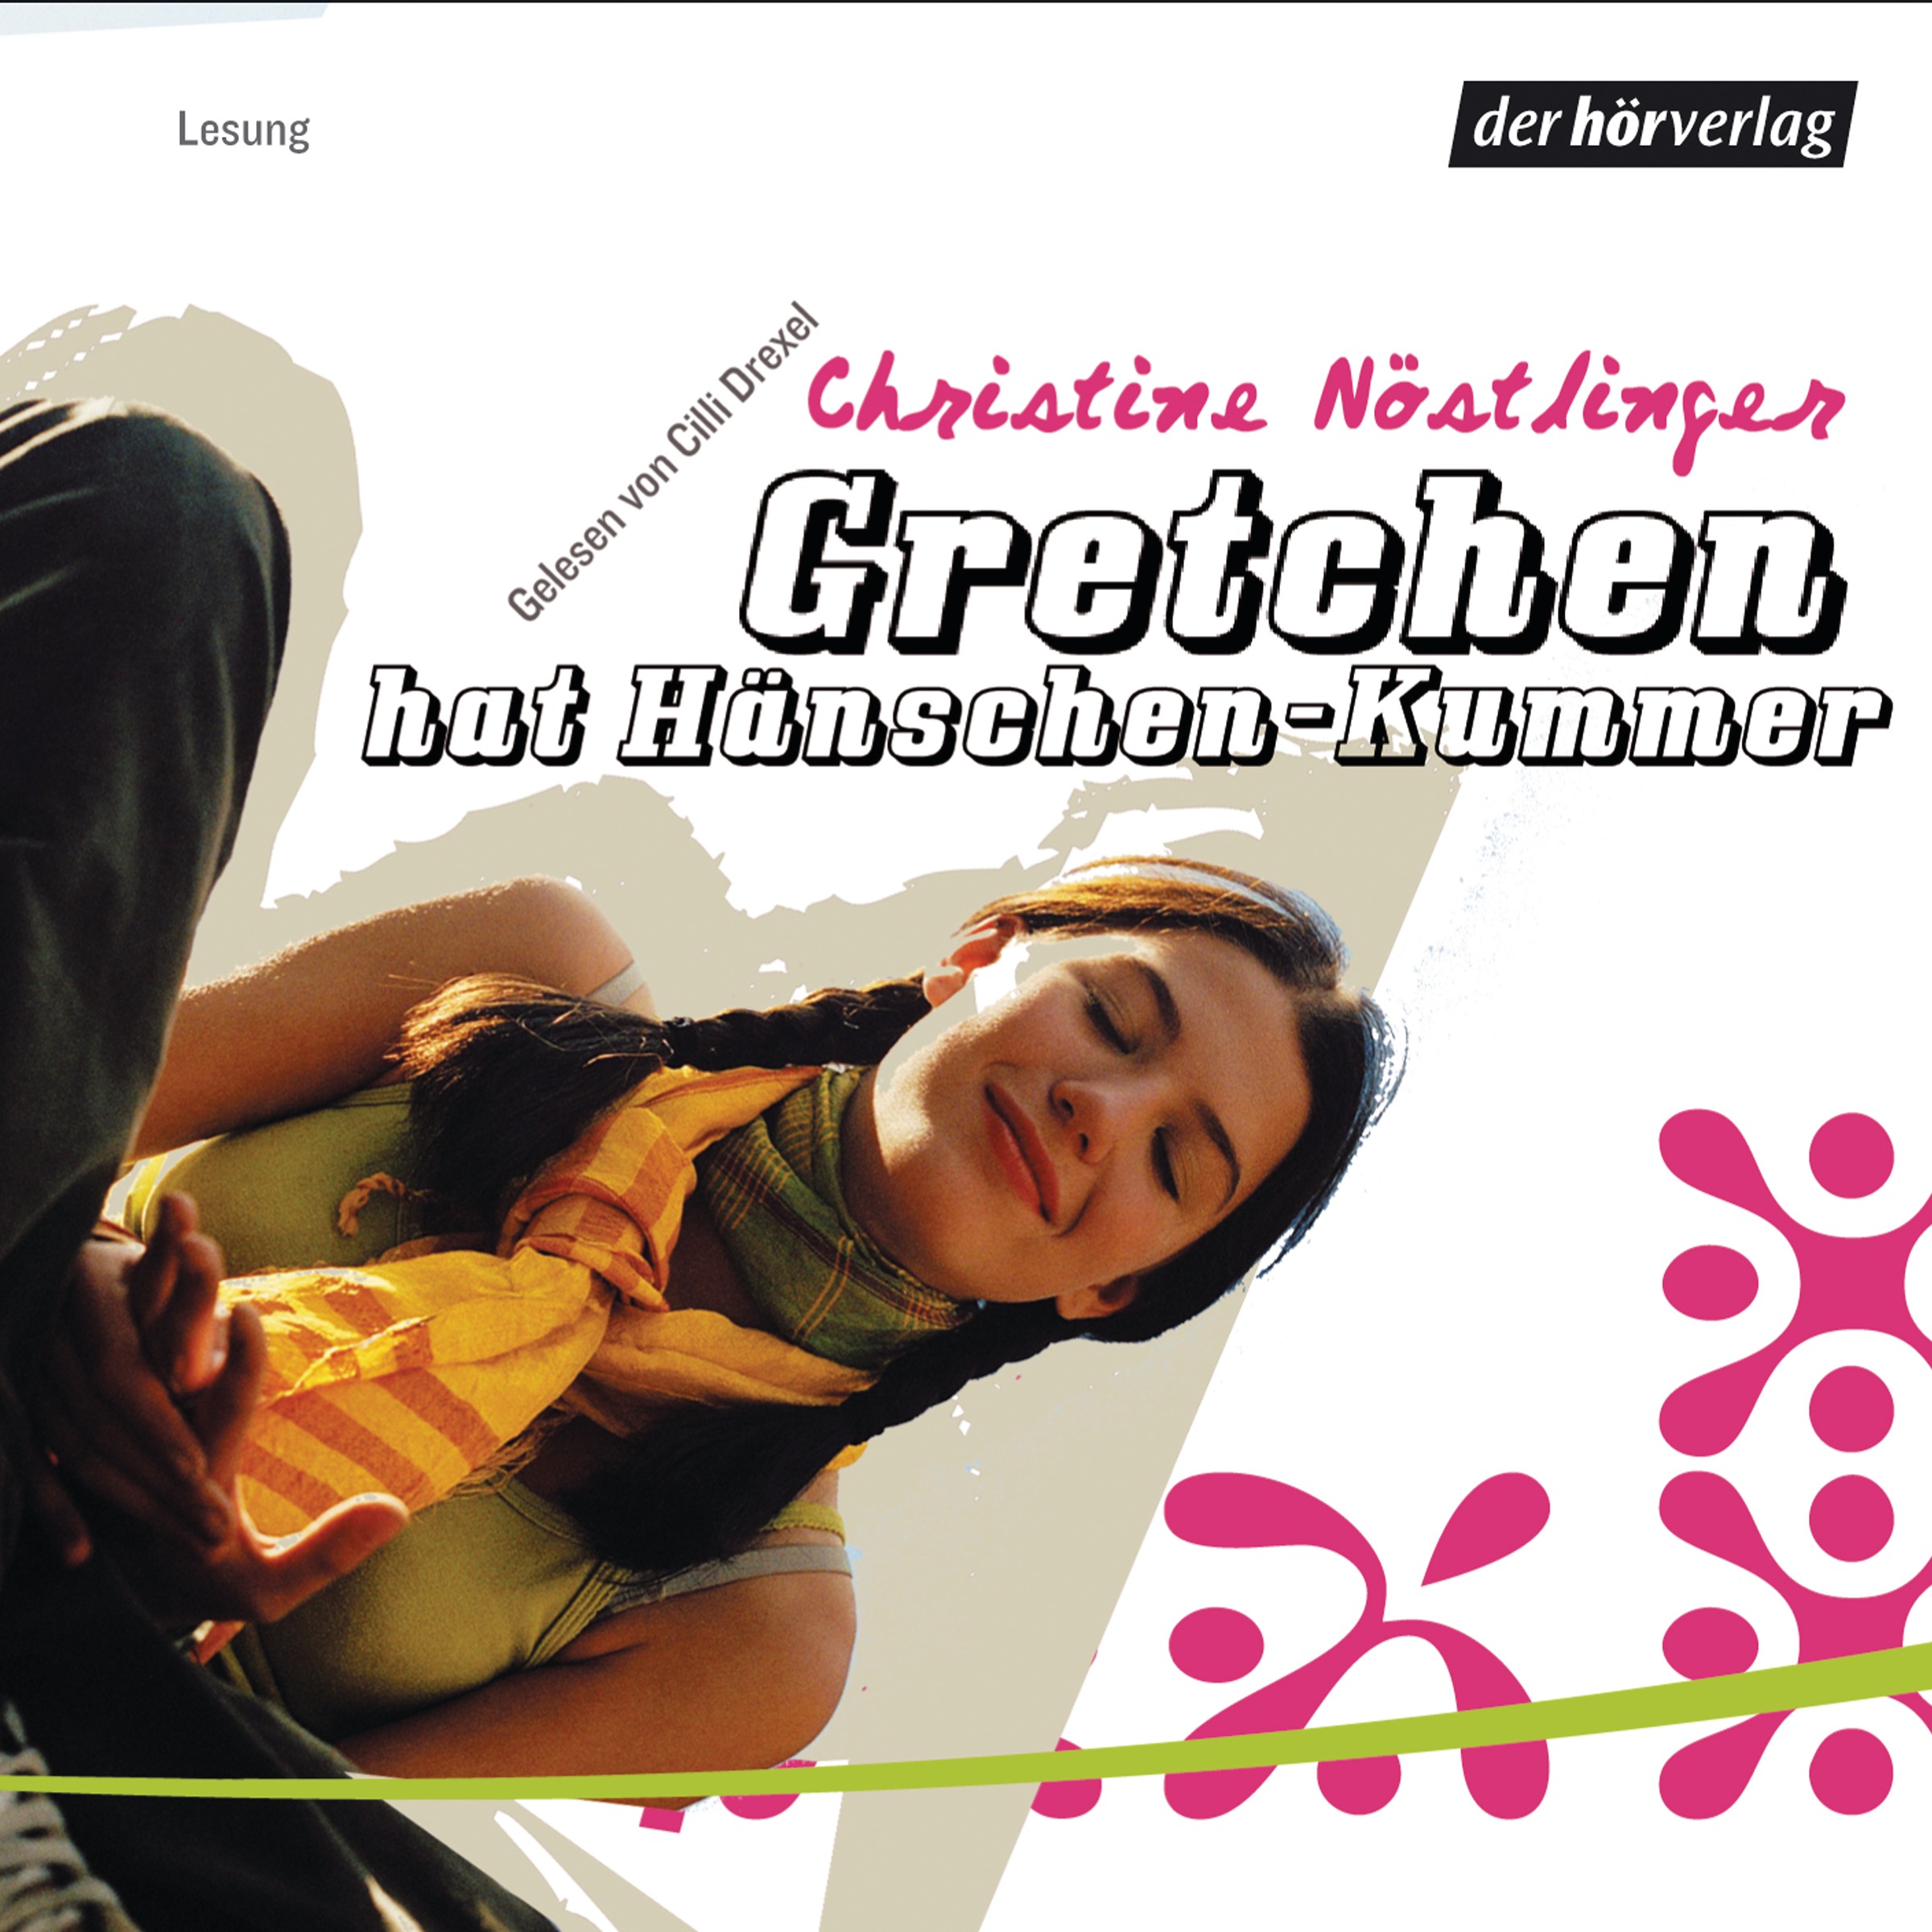 Gretchen - Nöstlinger: Hänschen-Kummer der Hörverlag Christine hat Download - Hörbuch